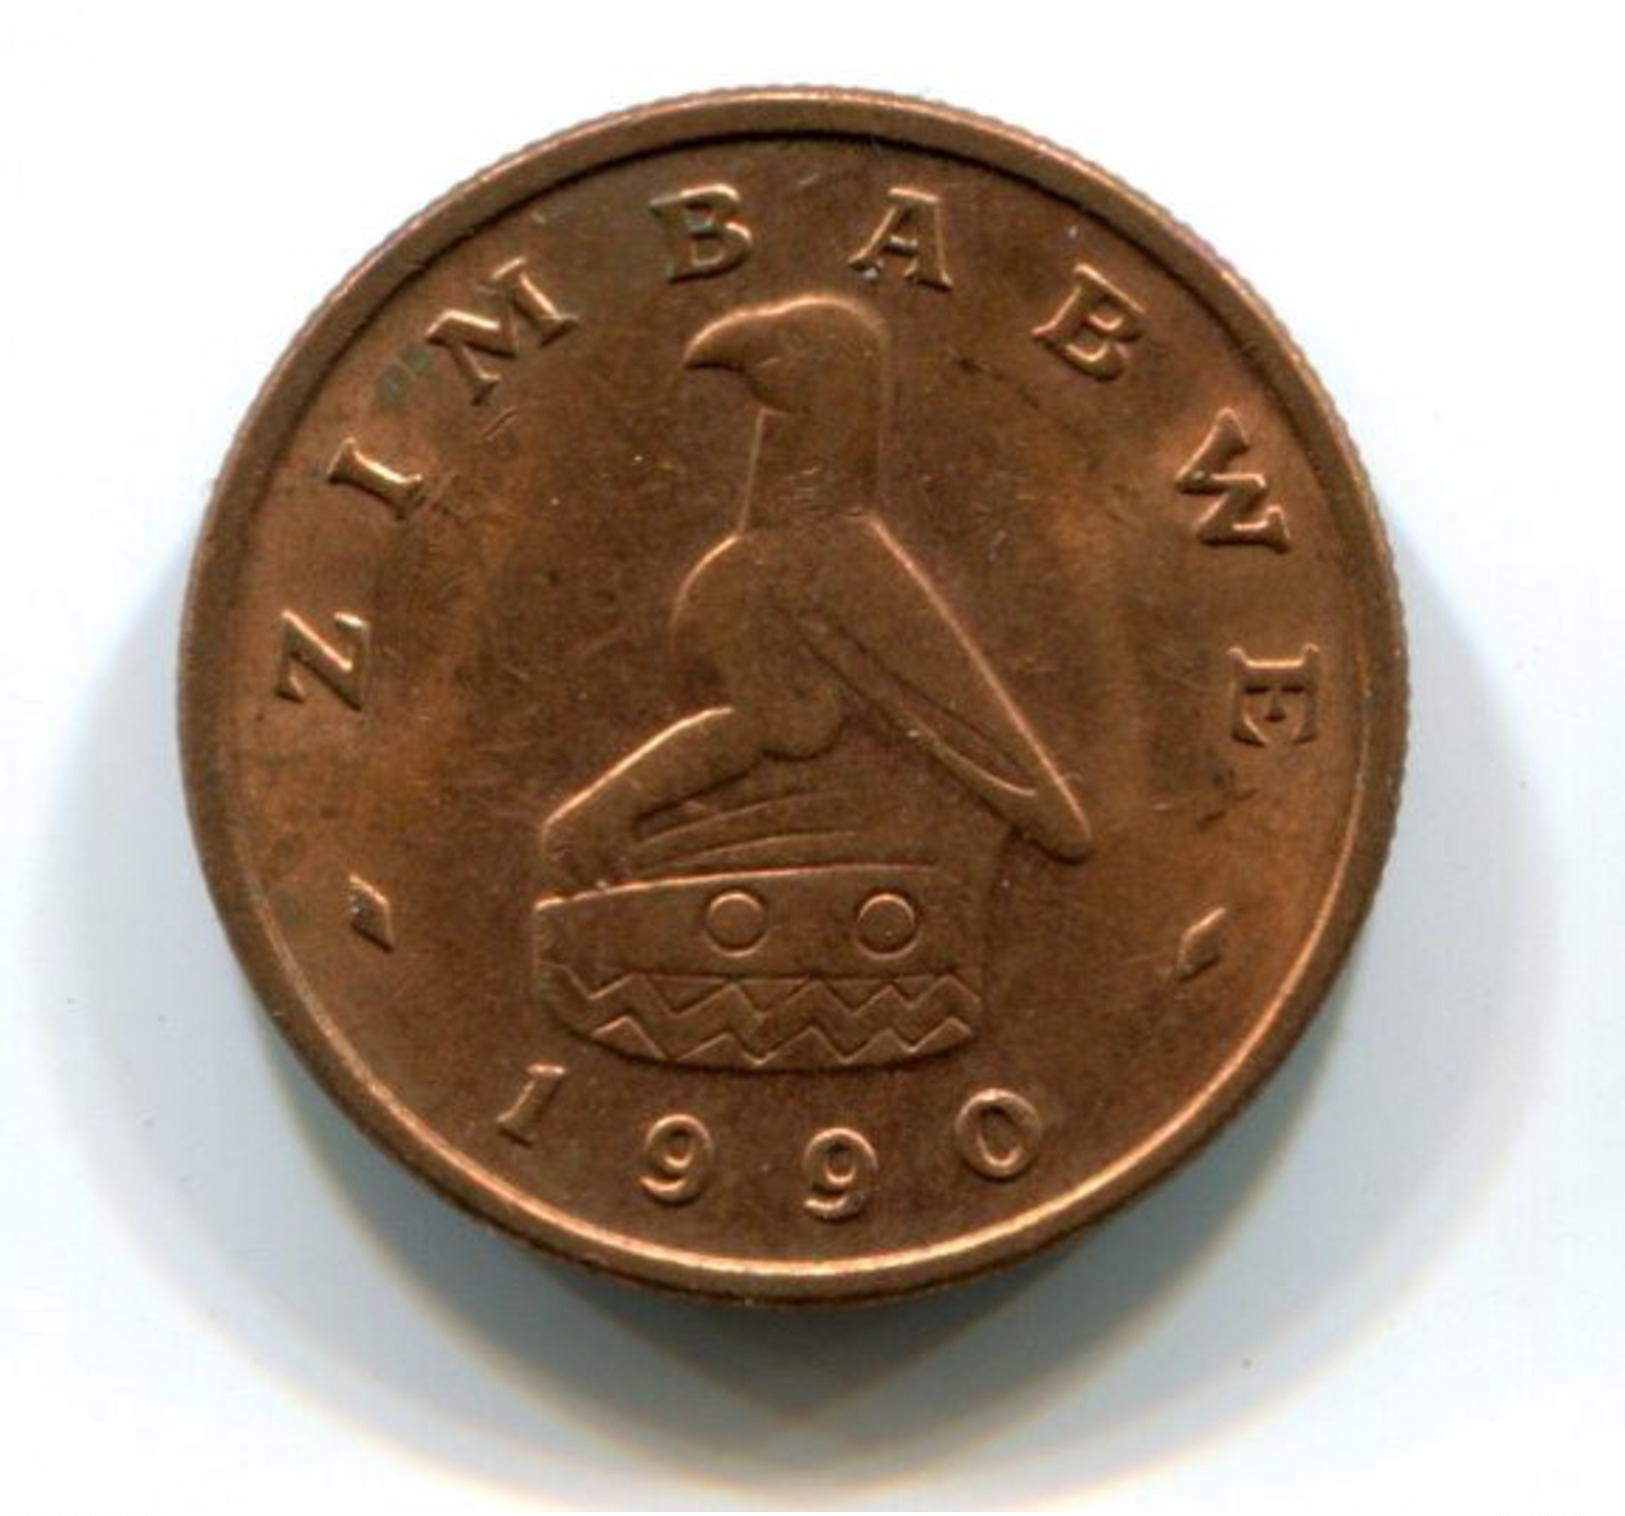 1990 Zimbabwe 1 Cent Coin - Zimbabwe